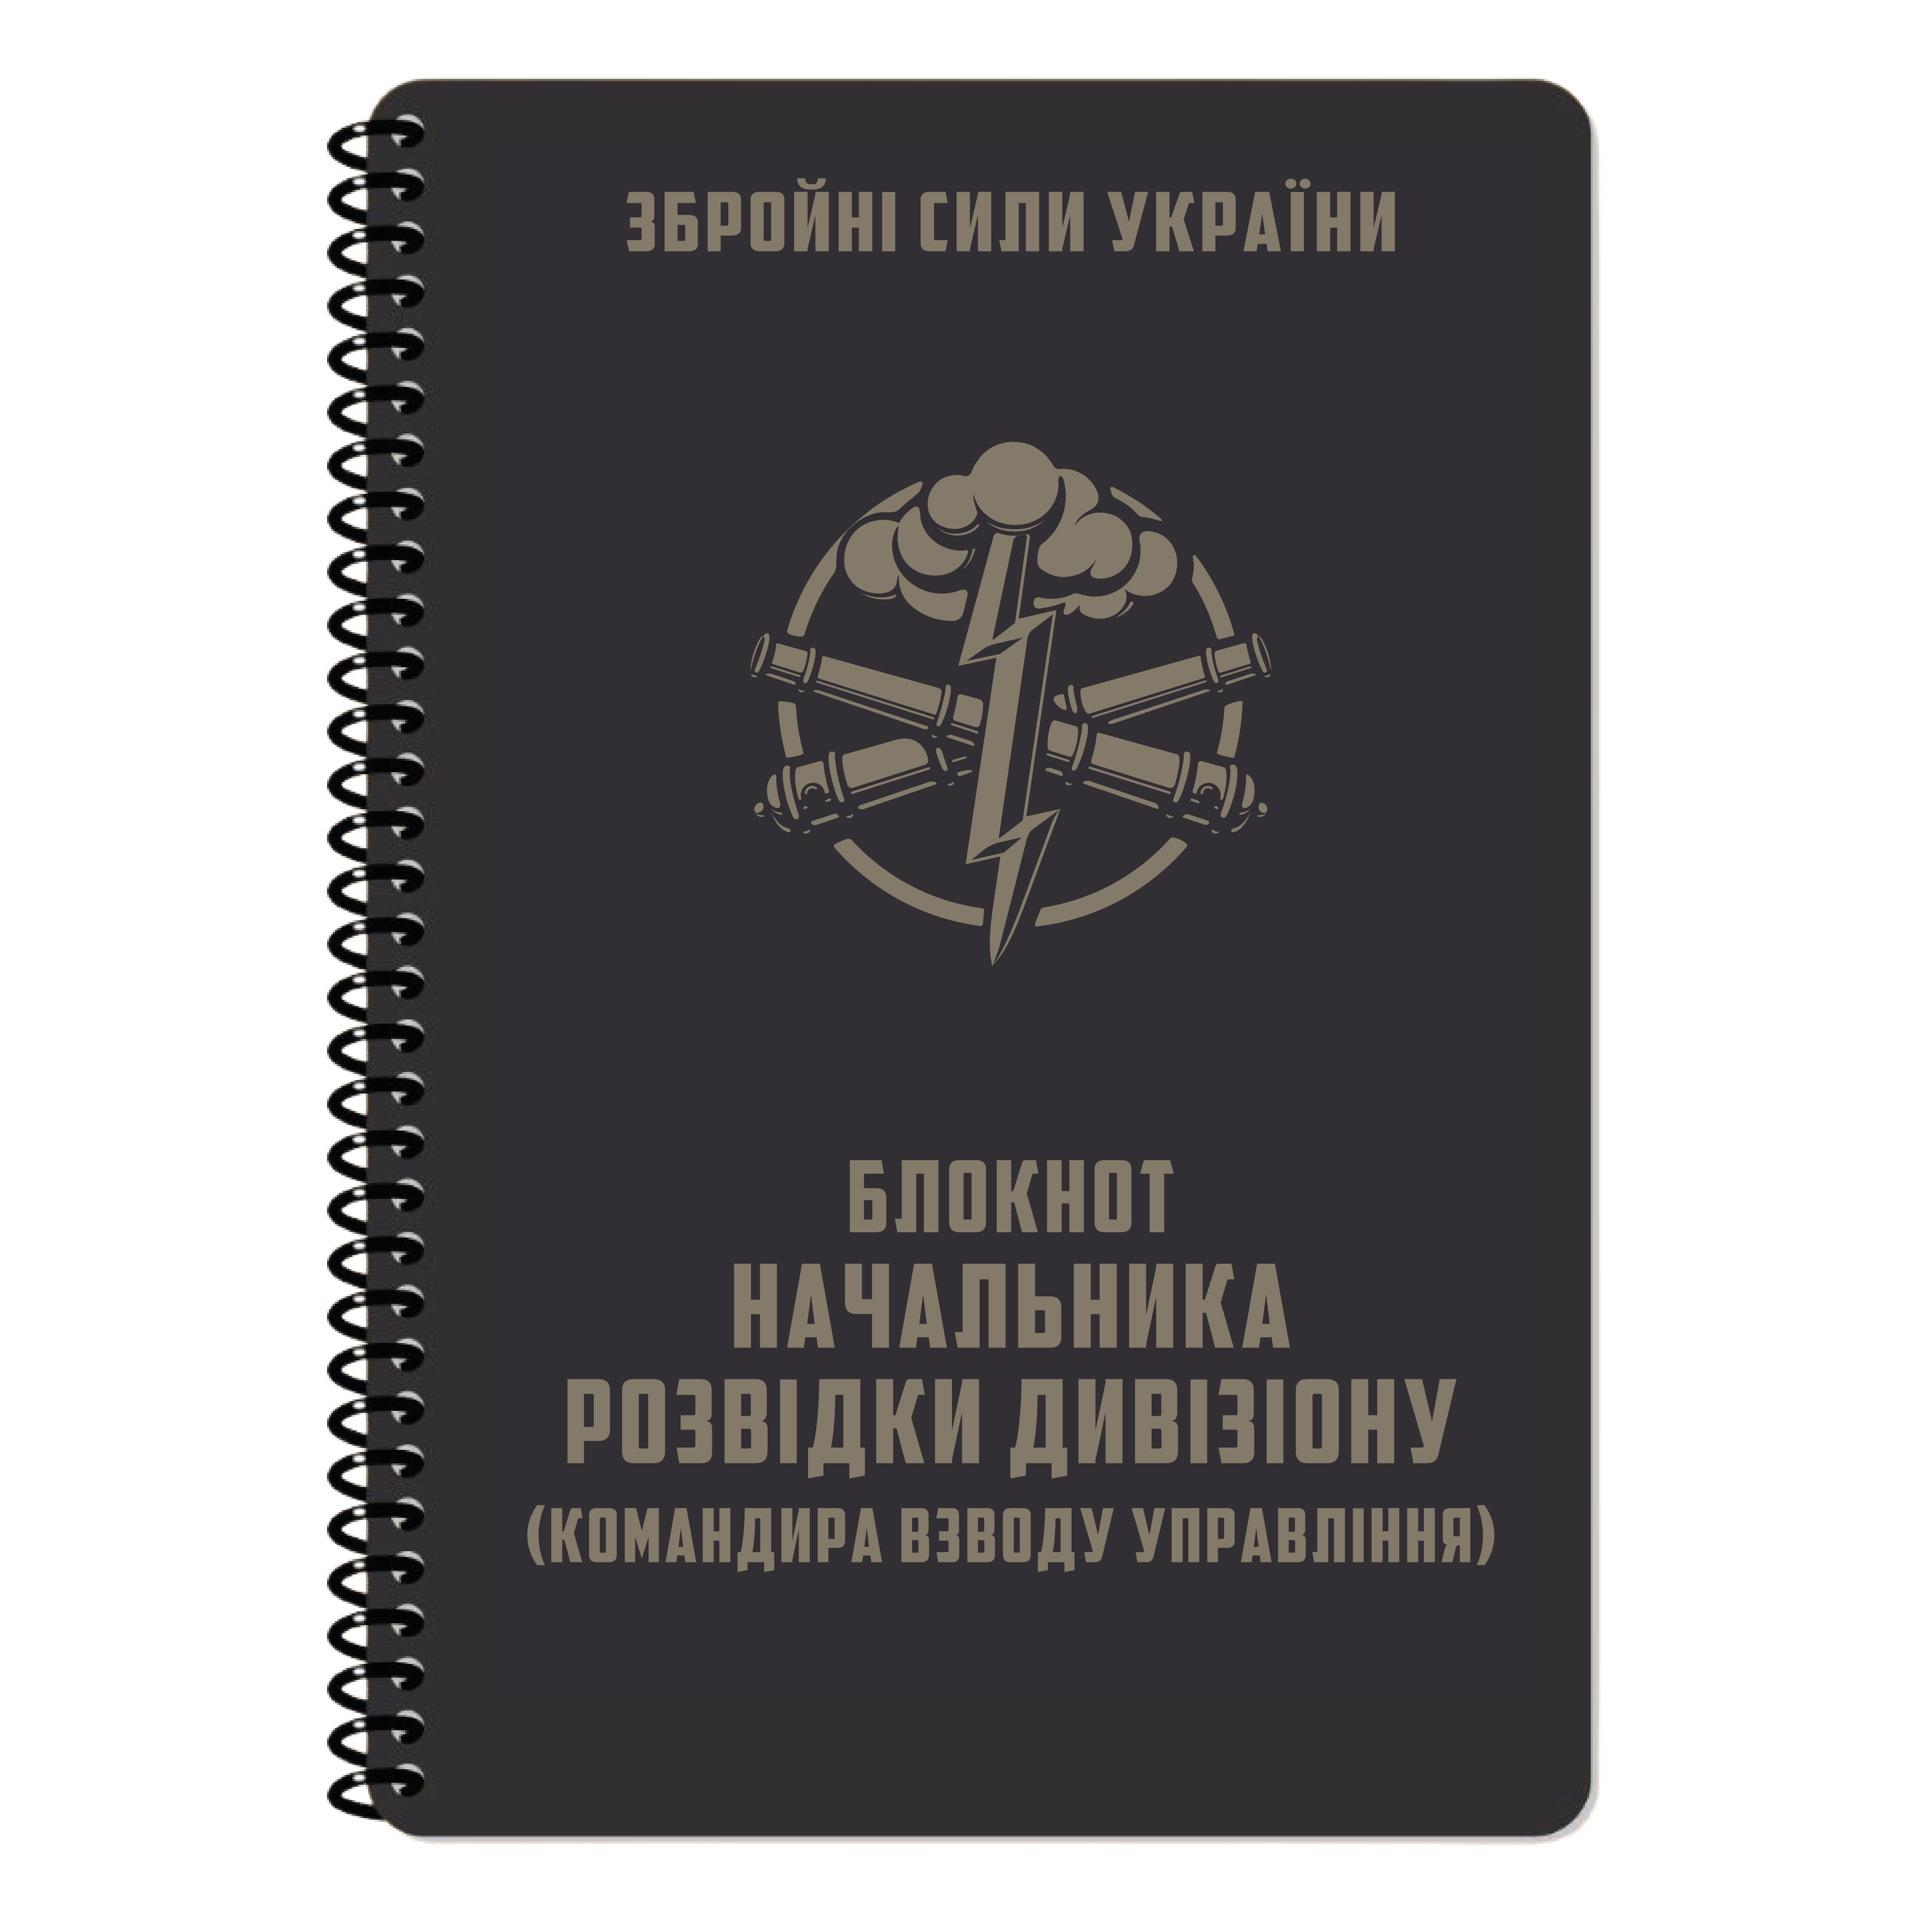 Блокнот начальника розвідки дивізіону, Ecopybook, А5